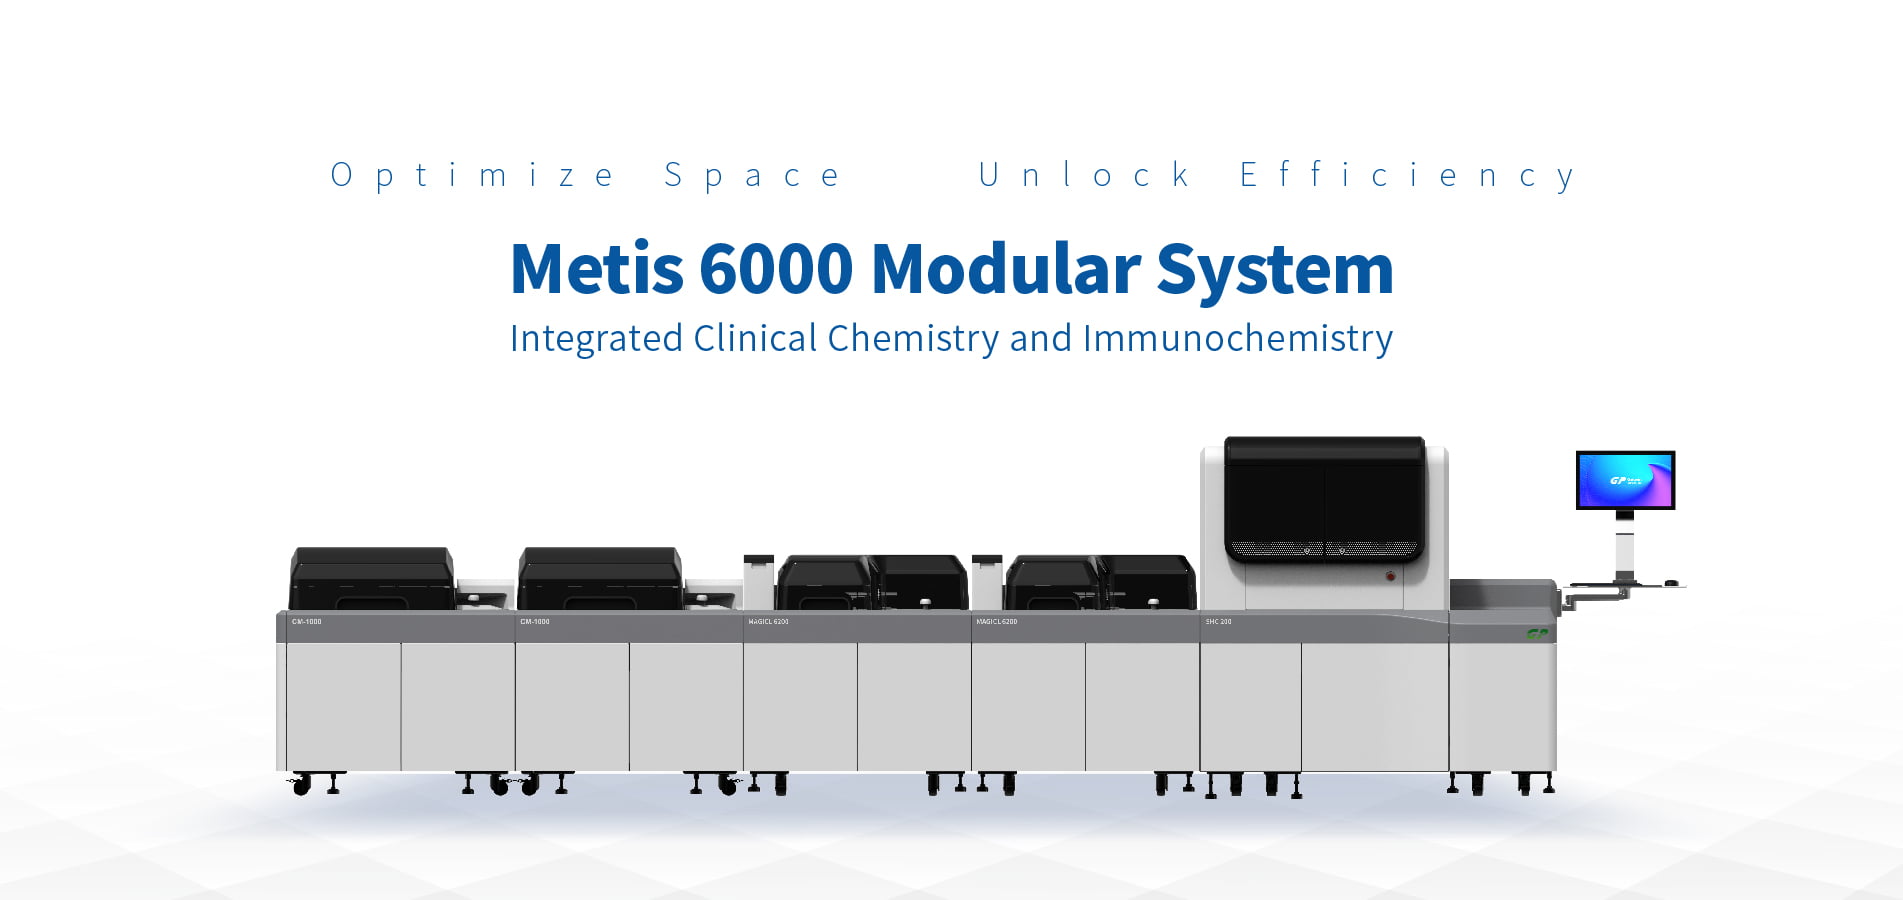 Rendre le système modulaire accessible à davantage de laboratoires - Metis 6000 répond à vos besoins